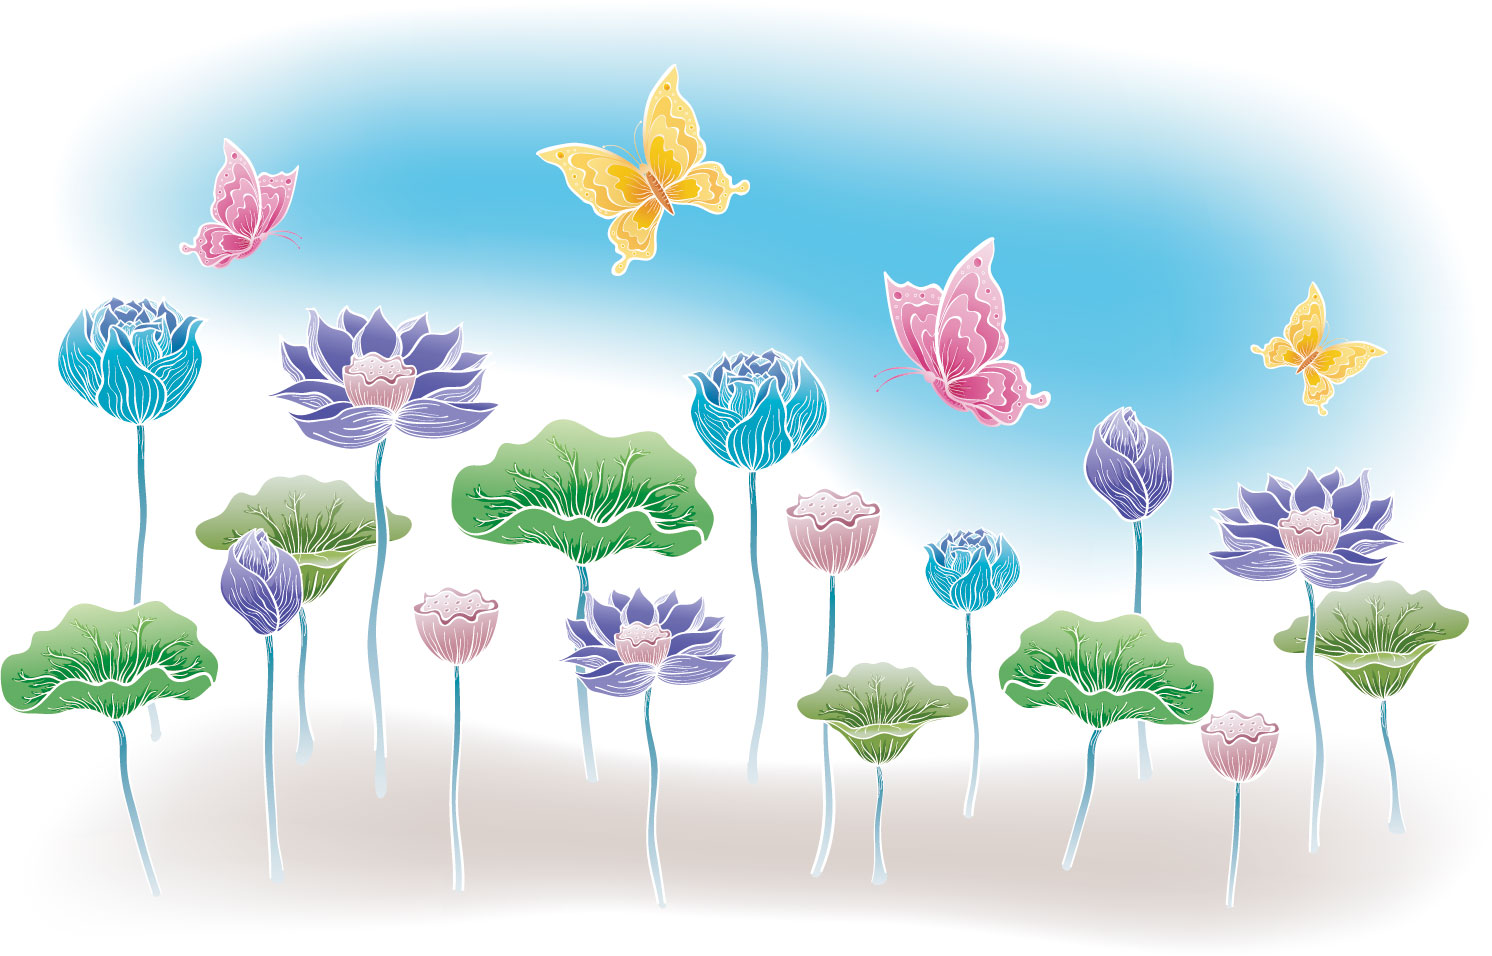 画像サンプル-群生する蓮と蝶々